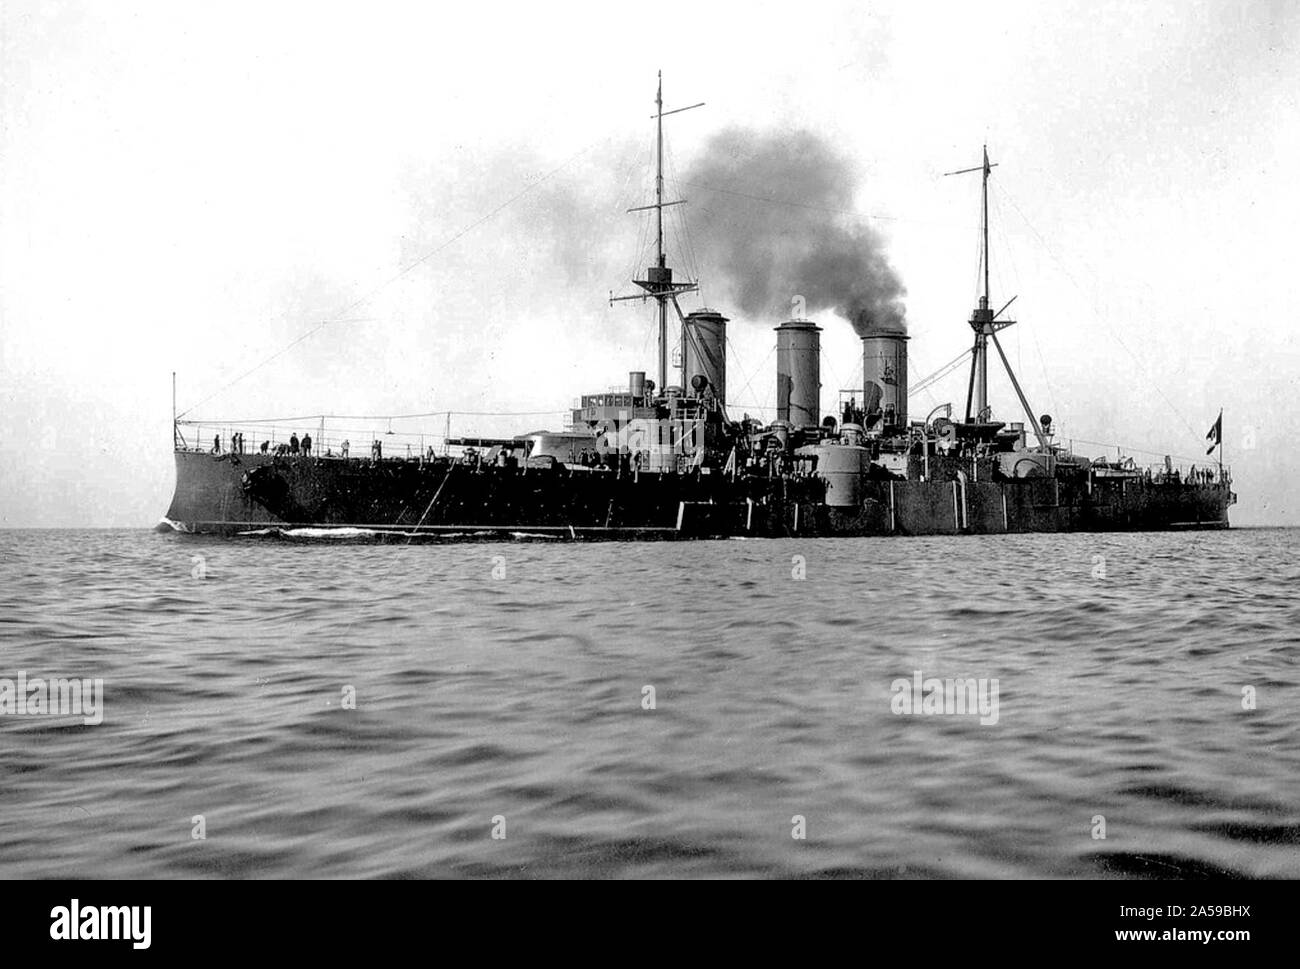 L'histoire de la Grèce - navire Averof en peinture gris foncé, c.1913 Banque D'Images